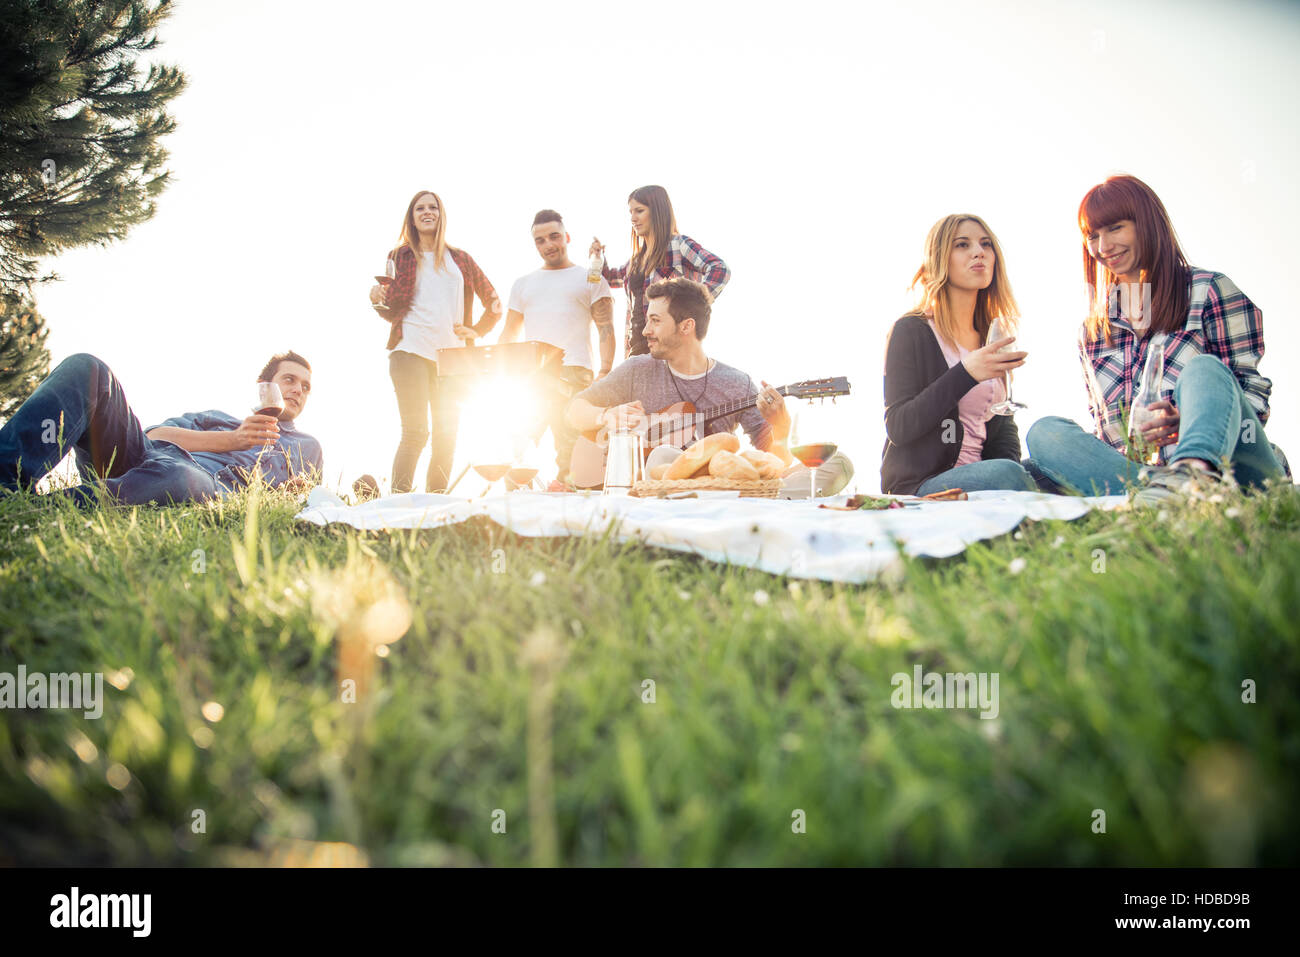 Gruppe von Freunden mit Picknick in einem Park an einem sonnigen Tag - Leute rumhängen, Spaß, Grillen und entspannen Stockfoto